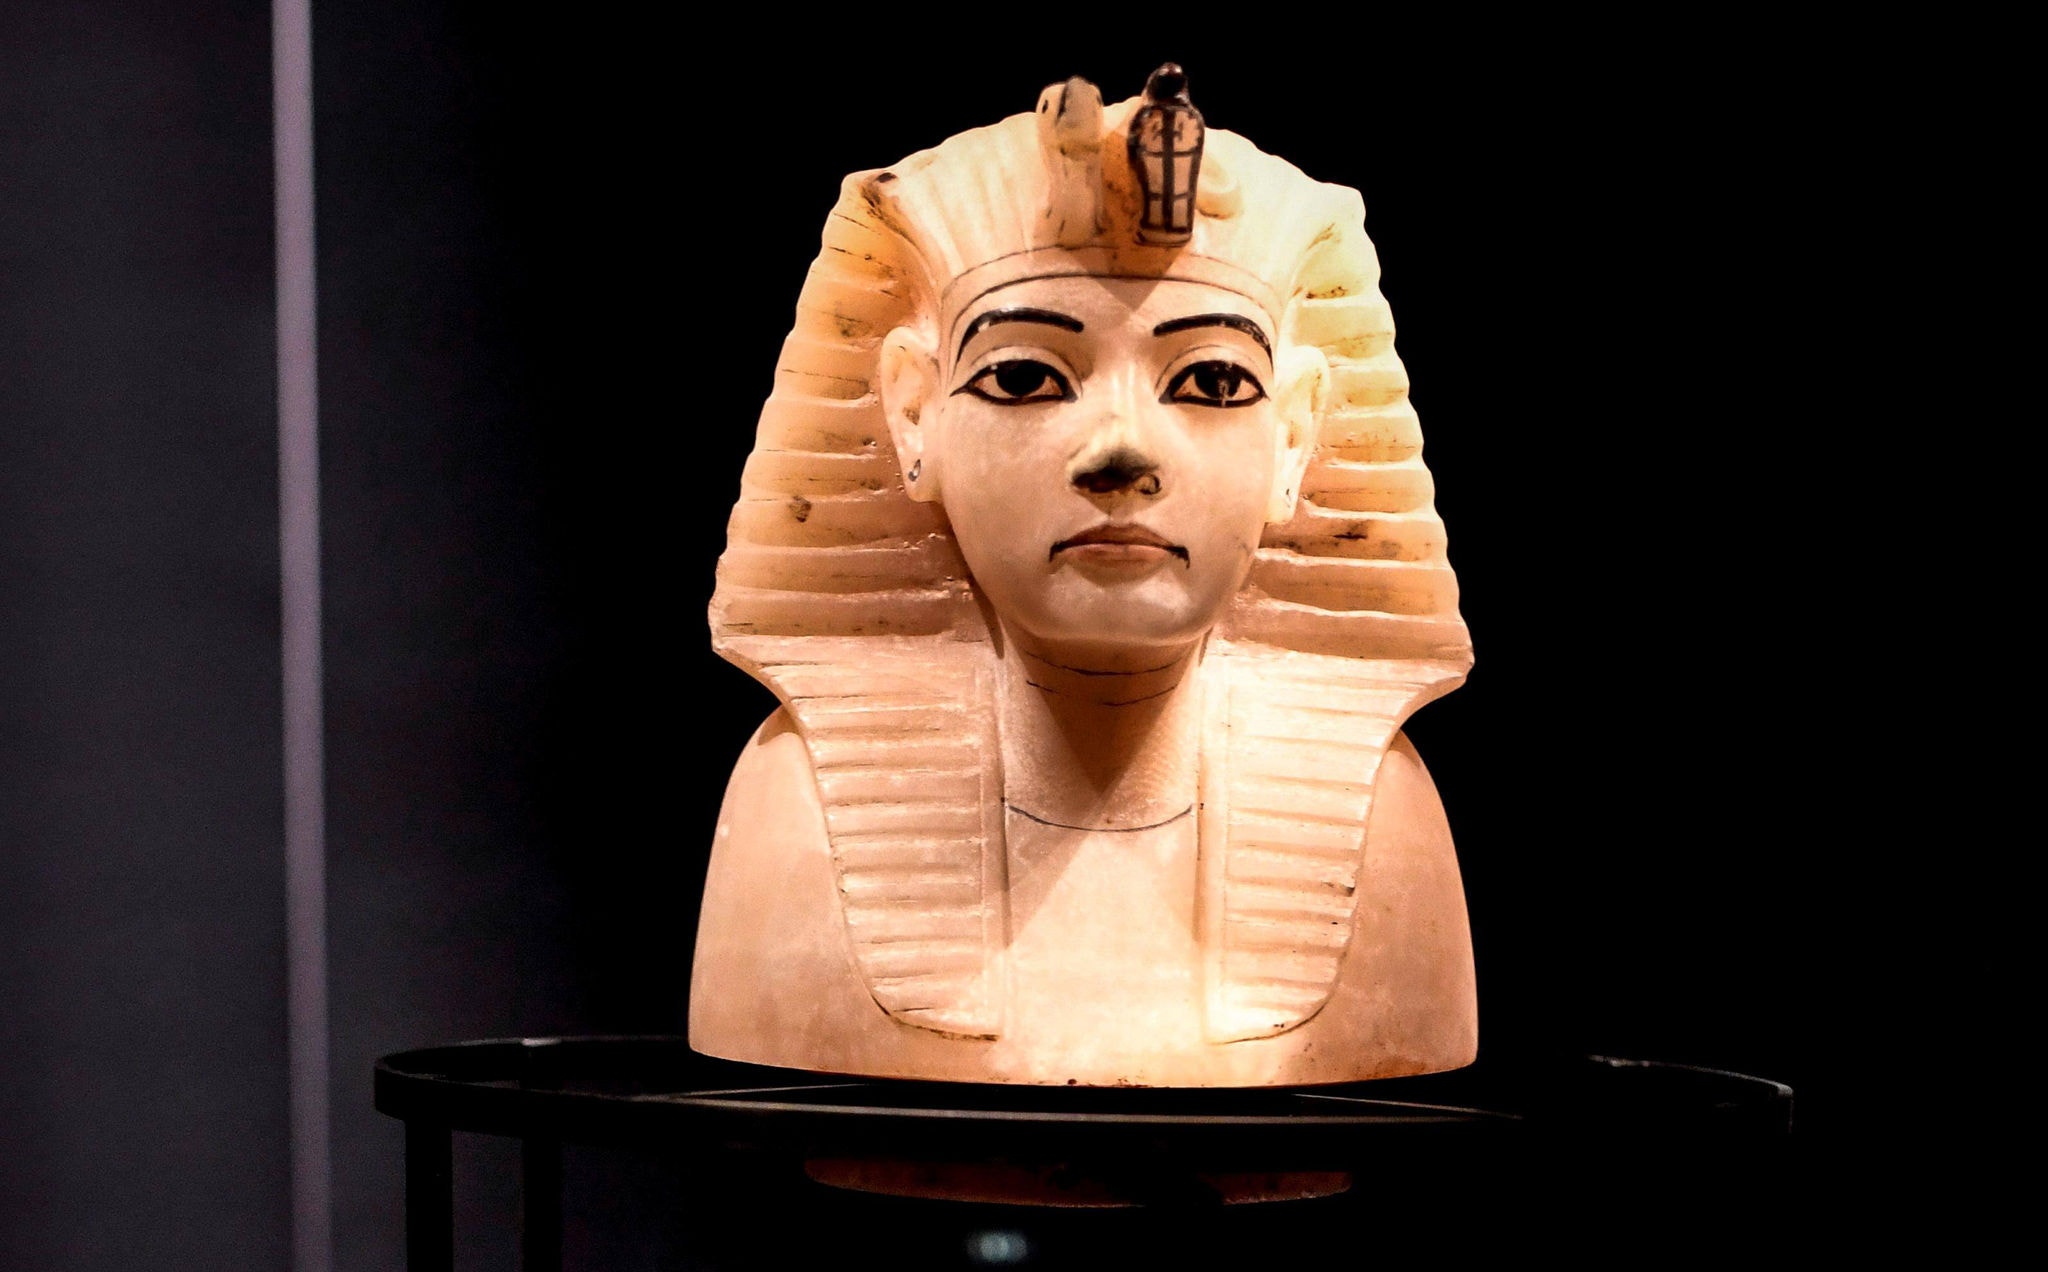 Os objetos vêm da tumba de Tutancâmon, descoberta em 1922